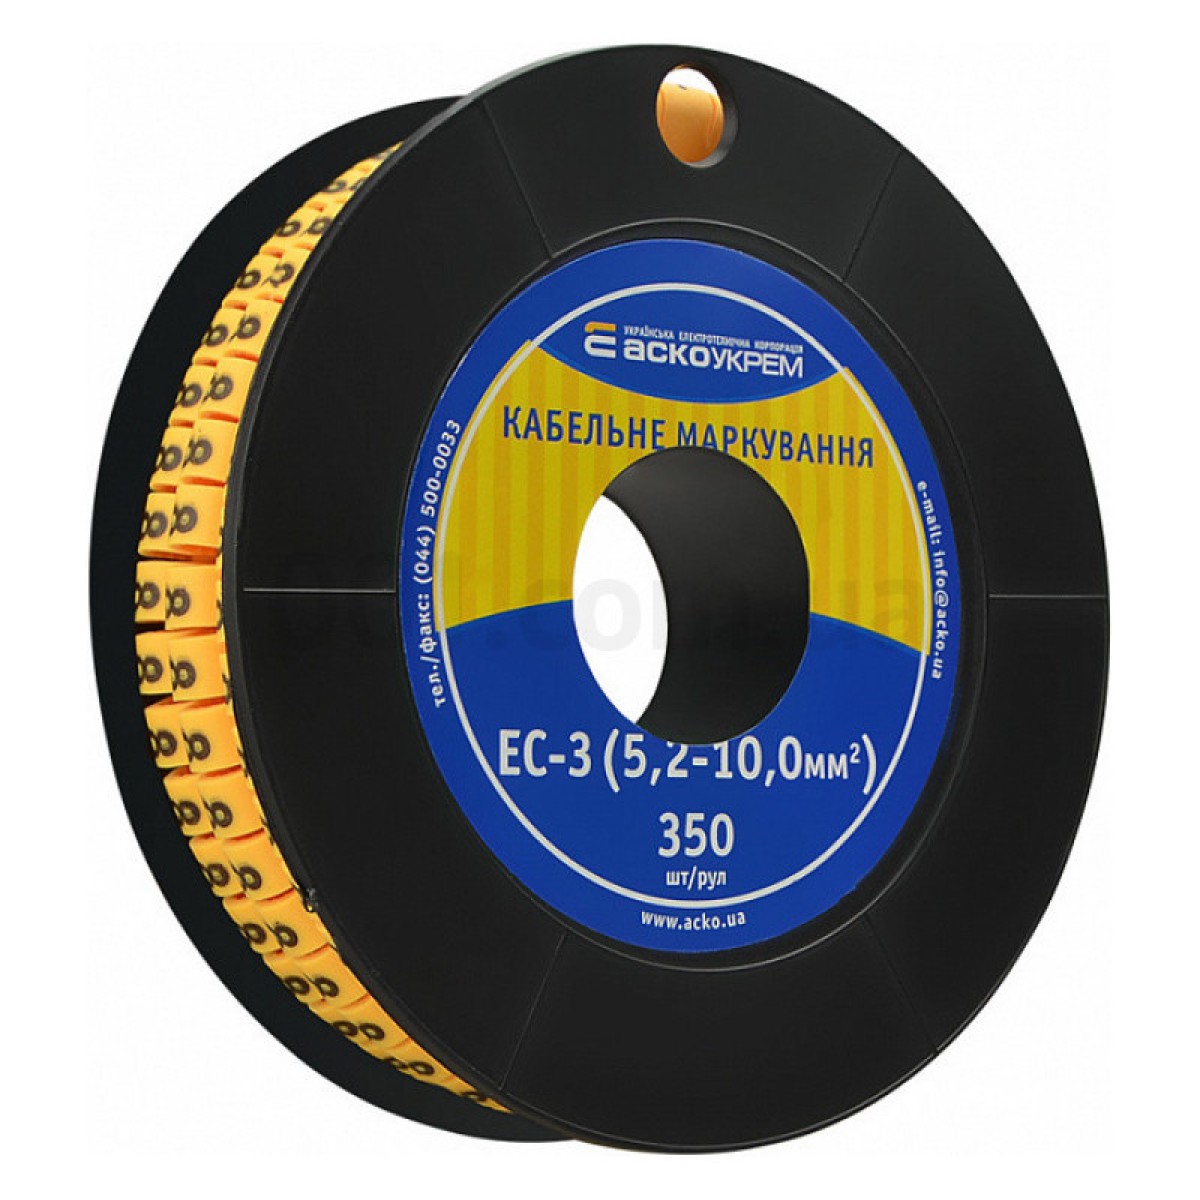 Маркування ЕС-3 для кабелю 5,2-10,0 мм² символ «8» (рулон 250 шт.), АСКО-УКРЕМ 98_98.jpg - фото 1